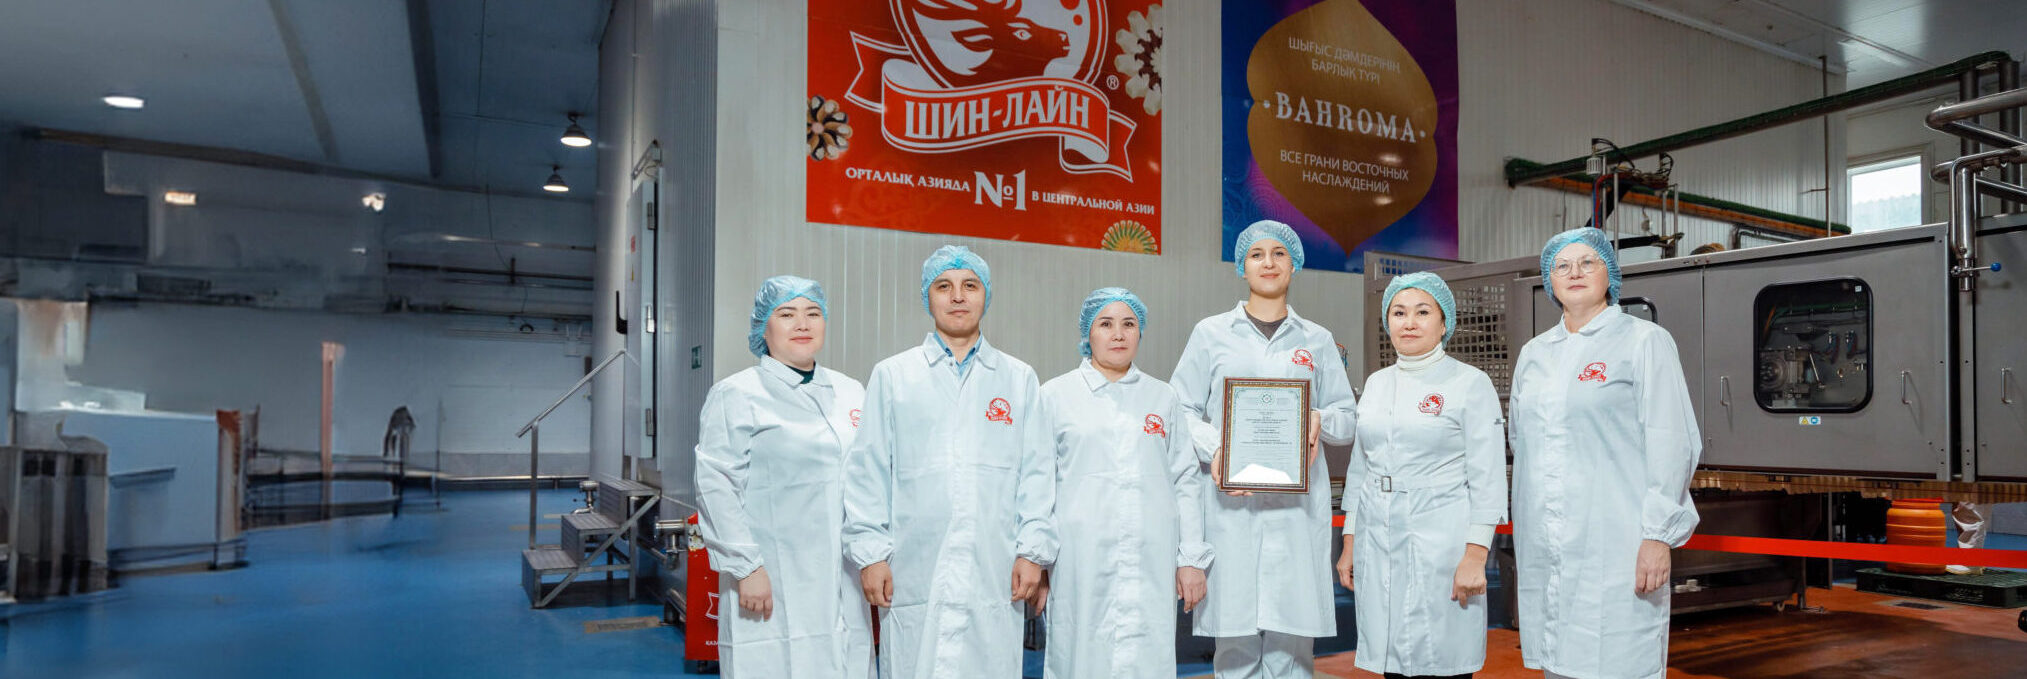 Мороженое «Шин-Лайн» соответствует стандартам Halal: получен международный сертификат